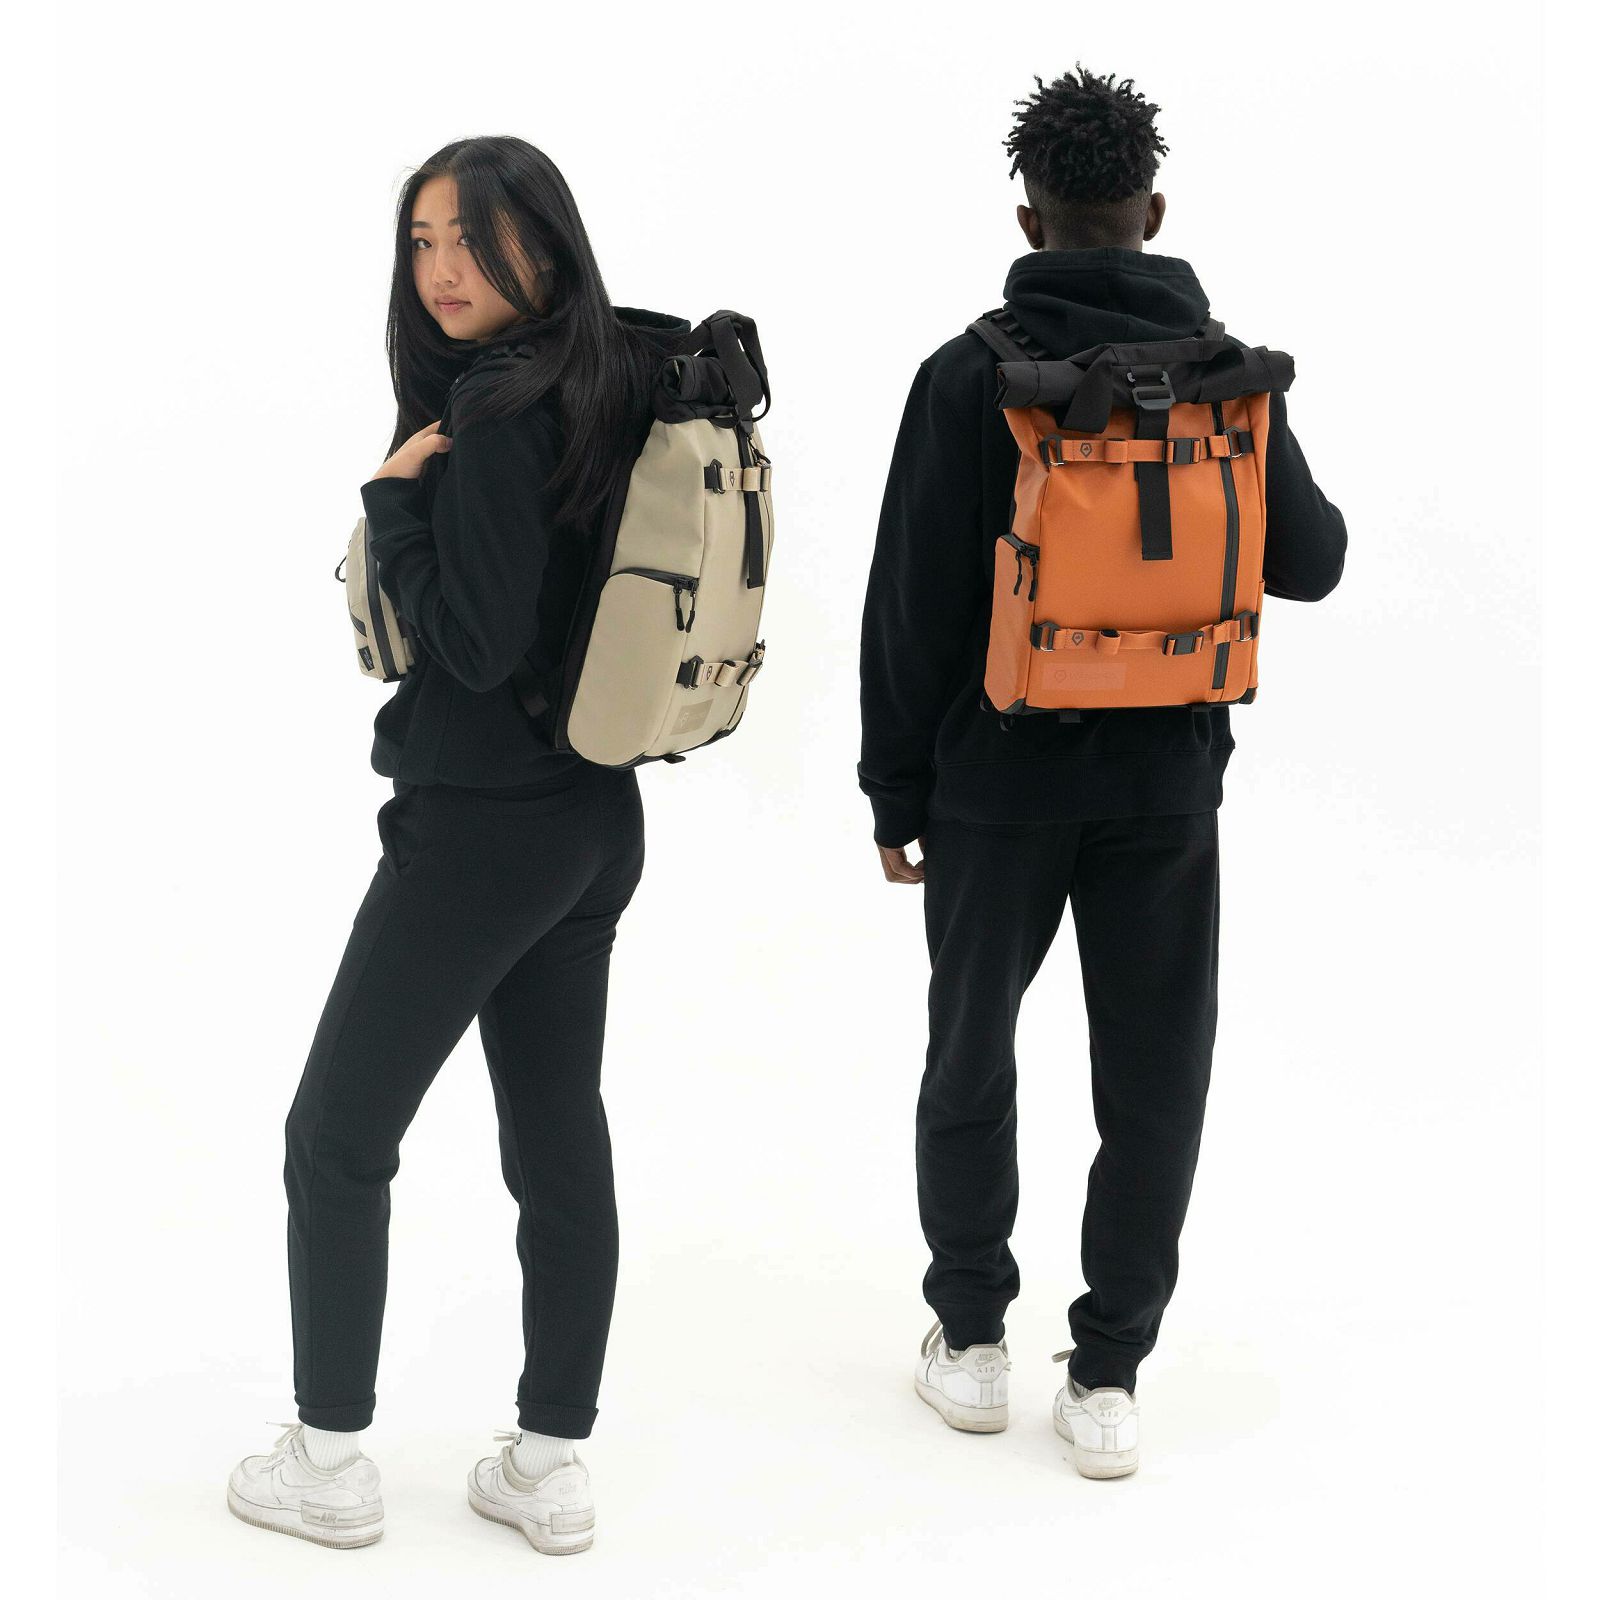 Wandrd Prvke 11L Lite V3 Sedona Orange Backpack ruksak za foto opremu (PKLT-SO-3)